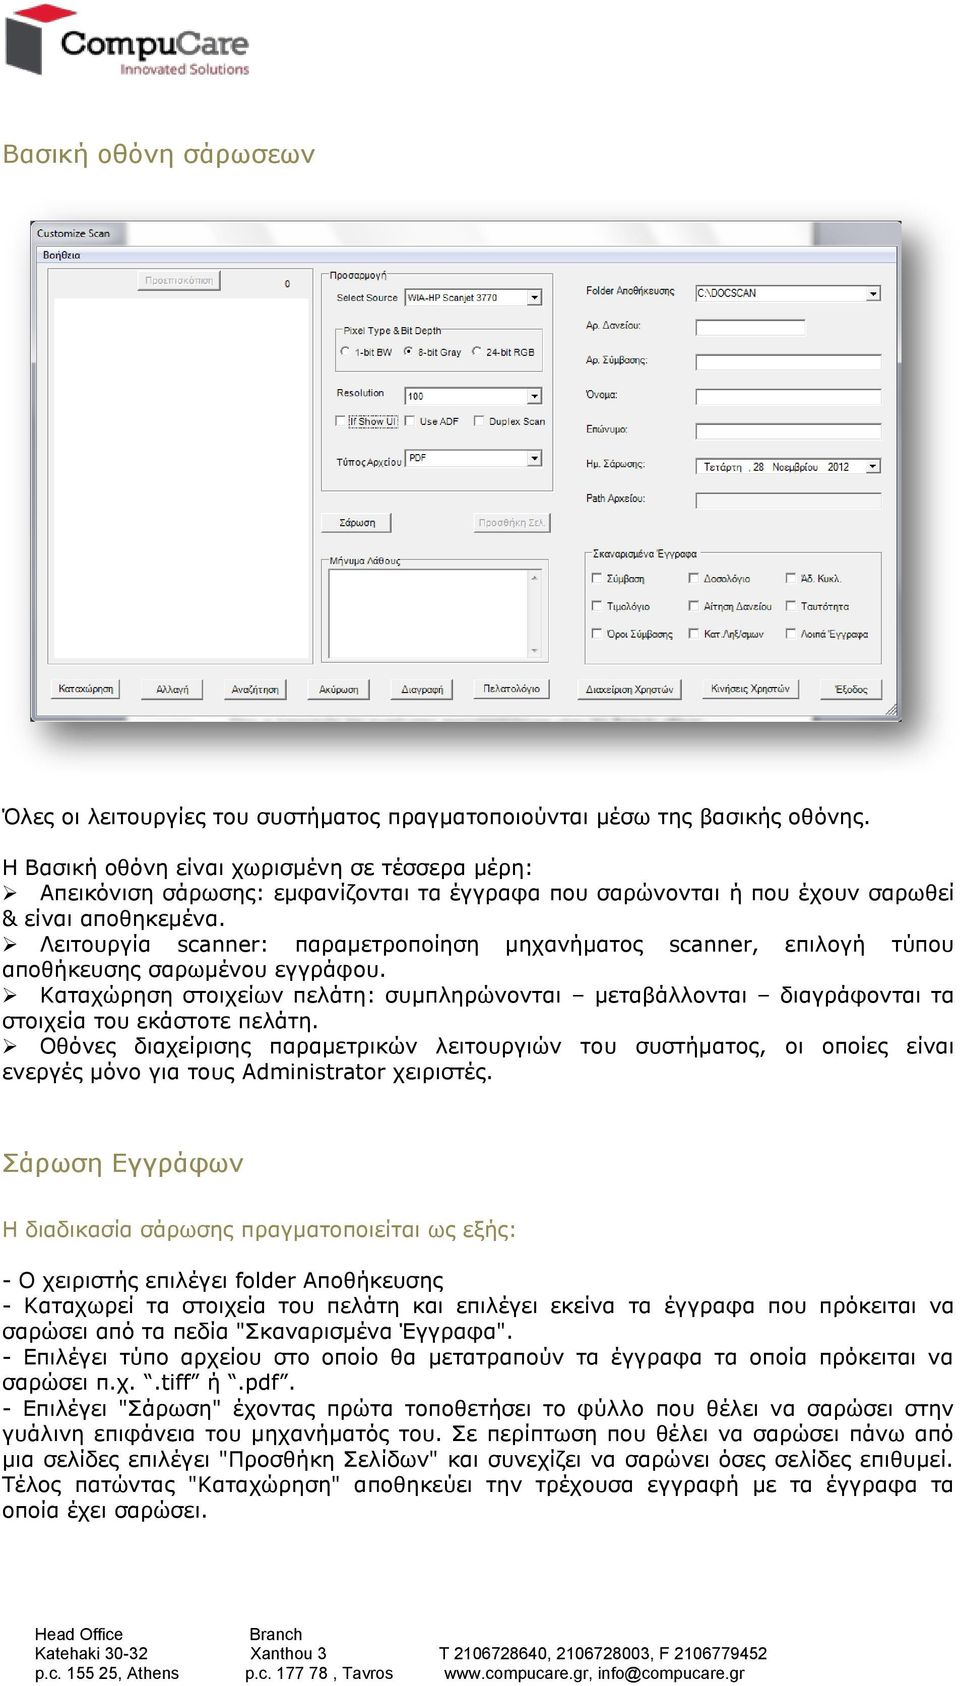 Λειτουργία scanner: παραμετροποίηση μηχανήματος scanner, επιλογή τύπου αποθήκευσης σαρωμένου εγγράφου.